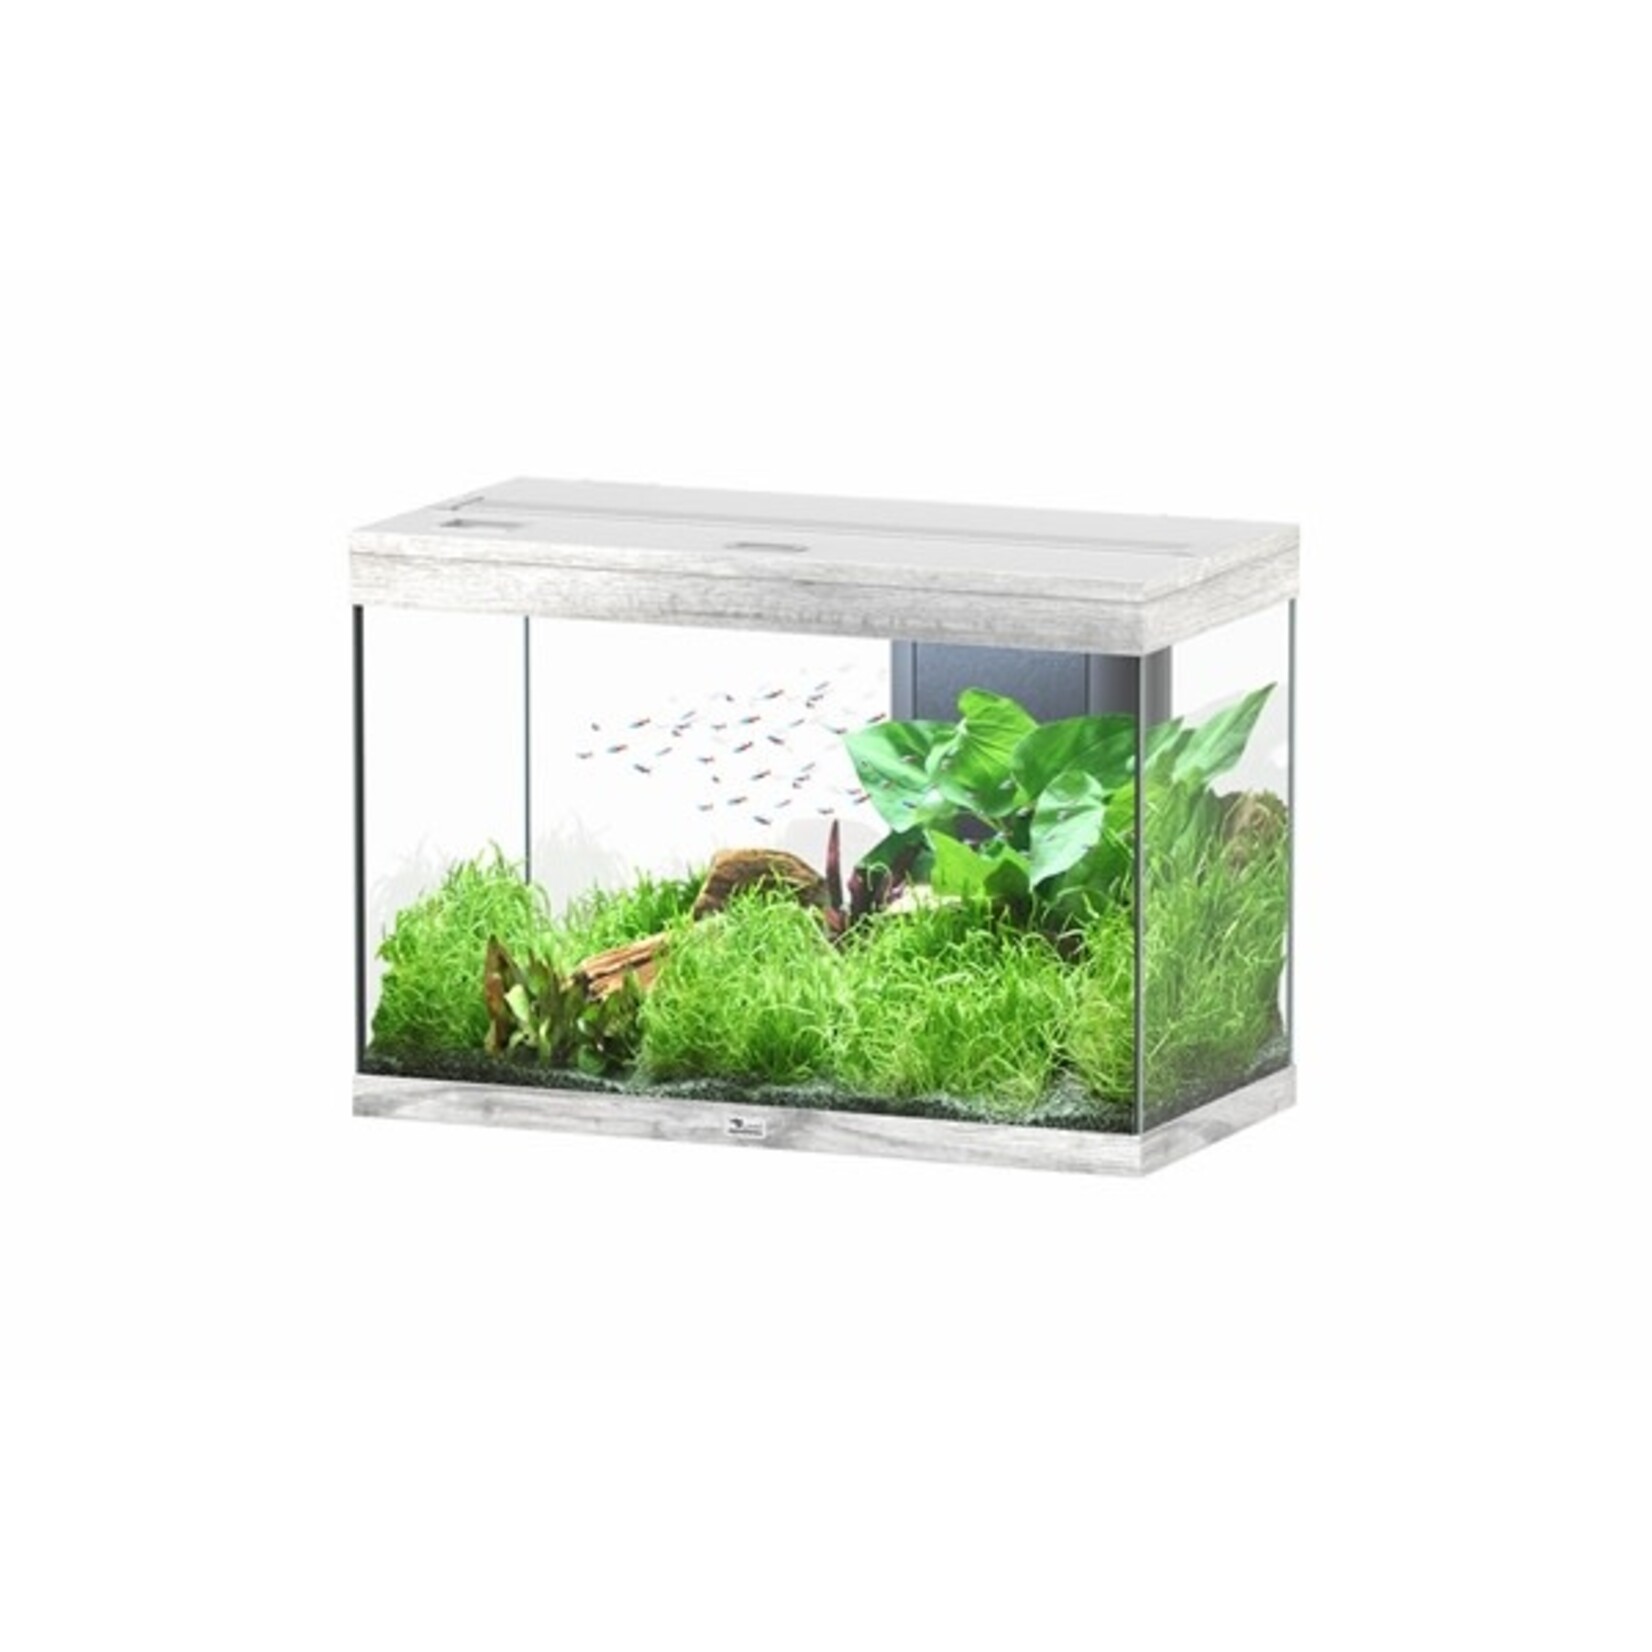 Aquatlantis Aquarium splendid 80 biobox whitewash-088